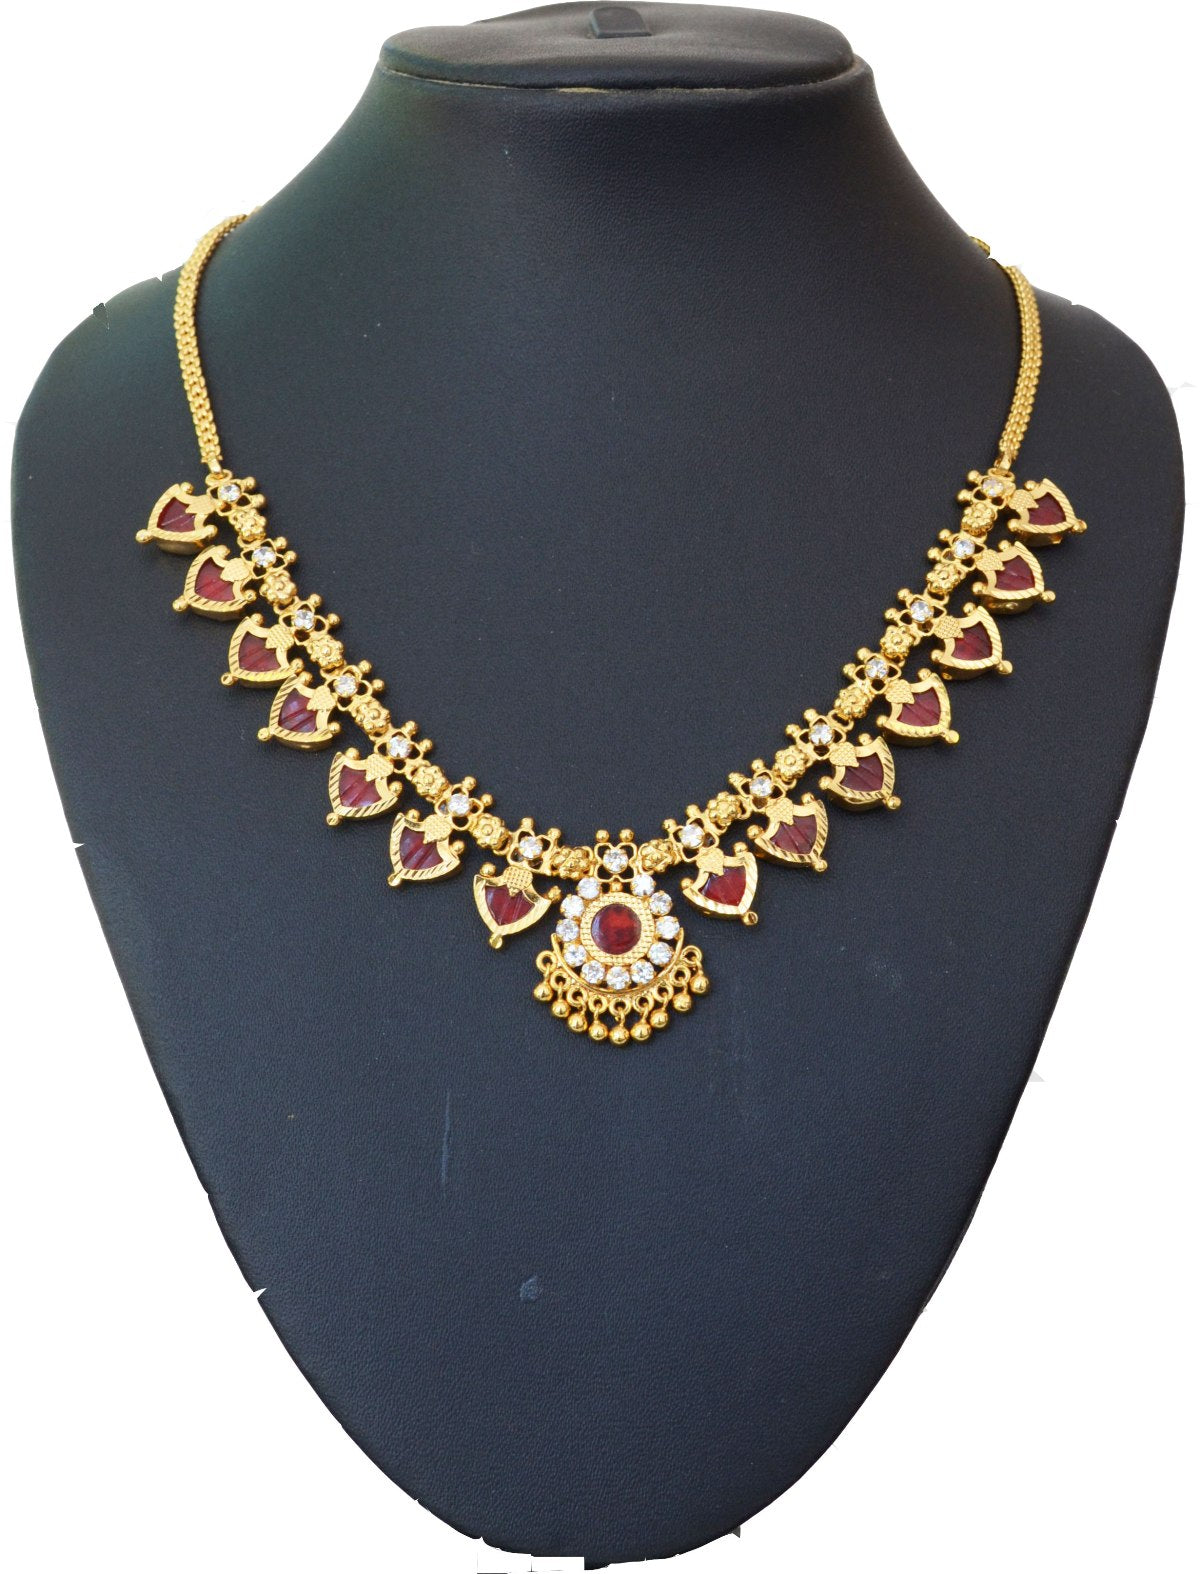 Maroon palakka necklace with 14 palakka -  by Shrayathi